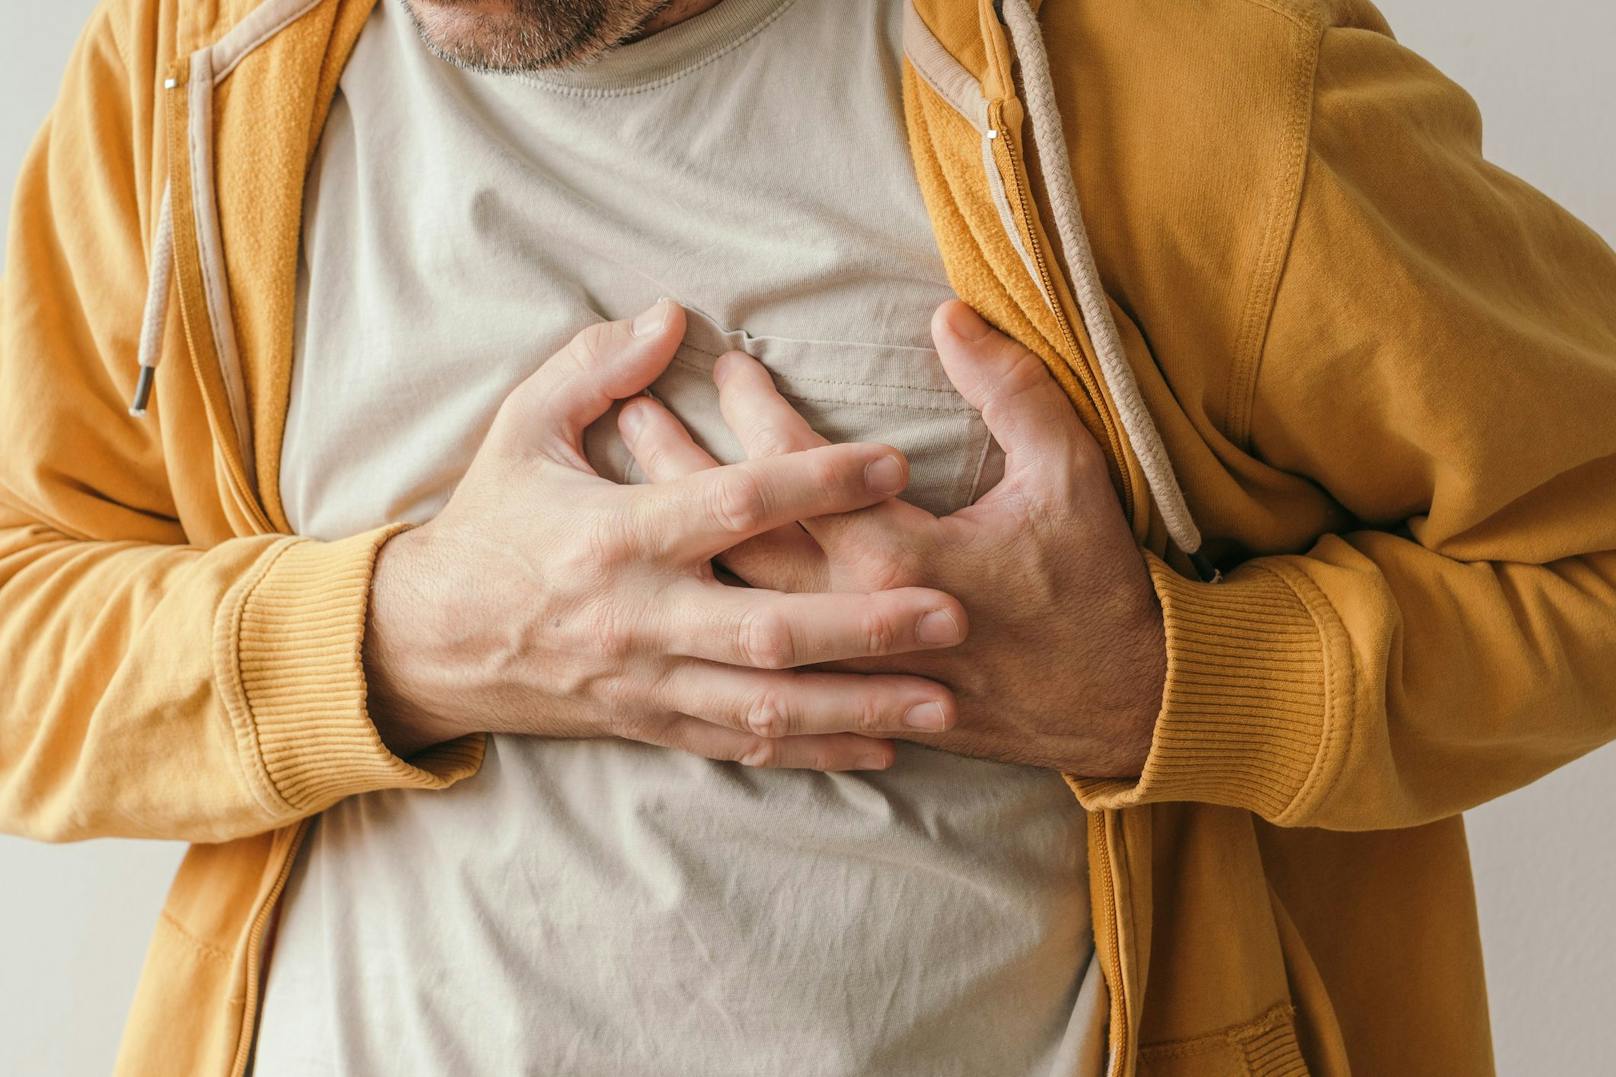 Bei Männern gehören Brustschmerzen zu den typischen Symptomen eines Herzinfarkts. (Symbolbild)